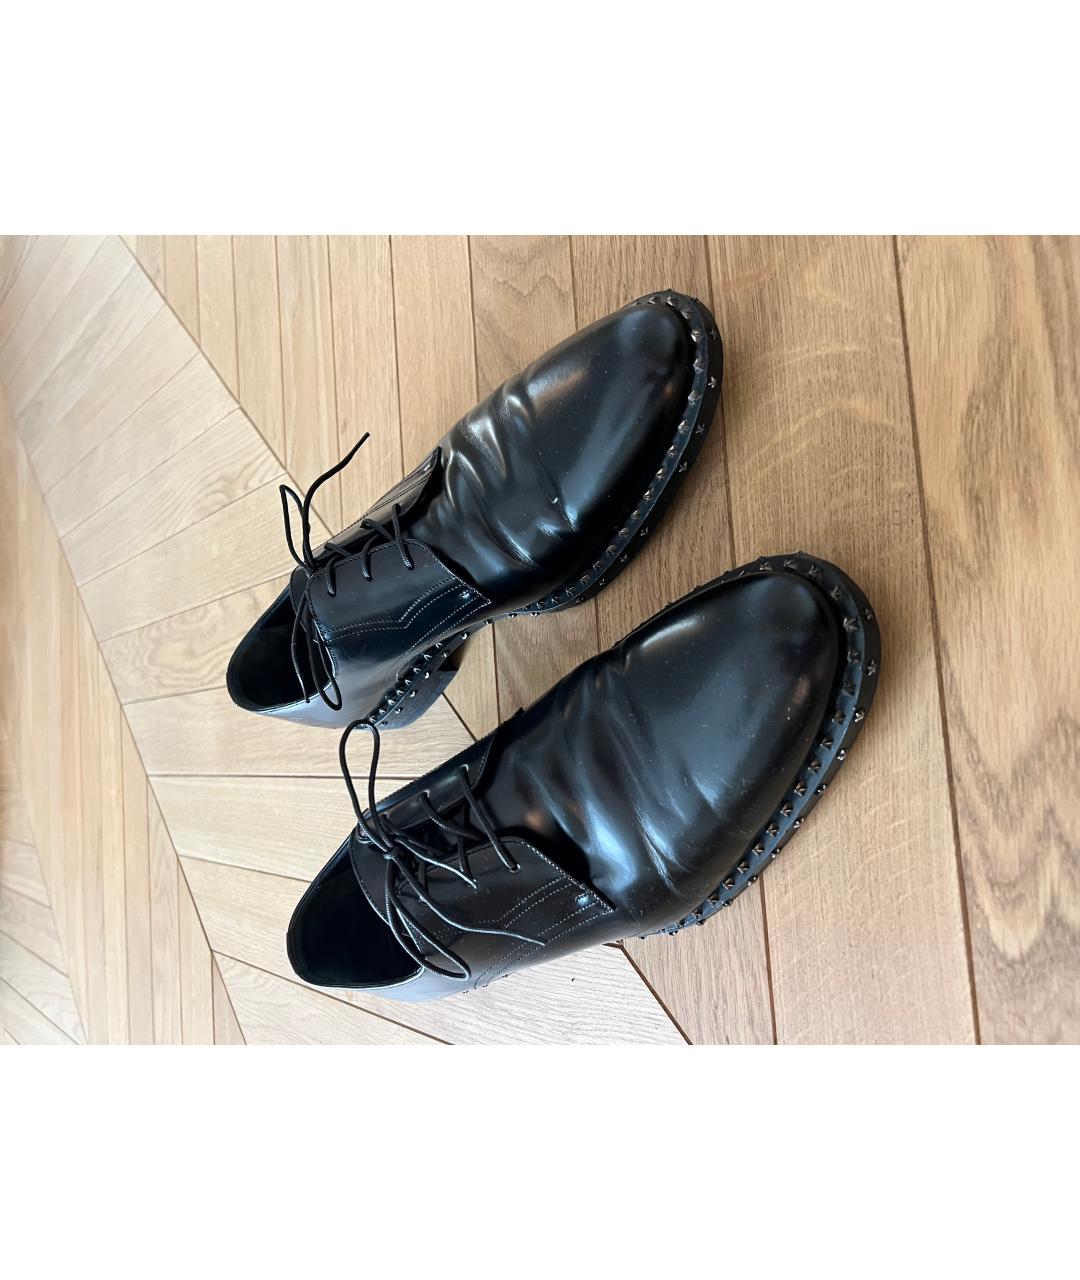 JIMMY CHOO Черные кожаные туфли, фото 2